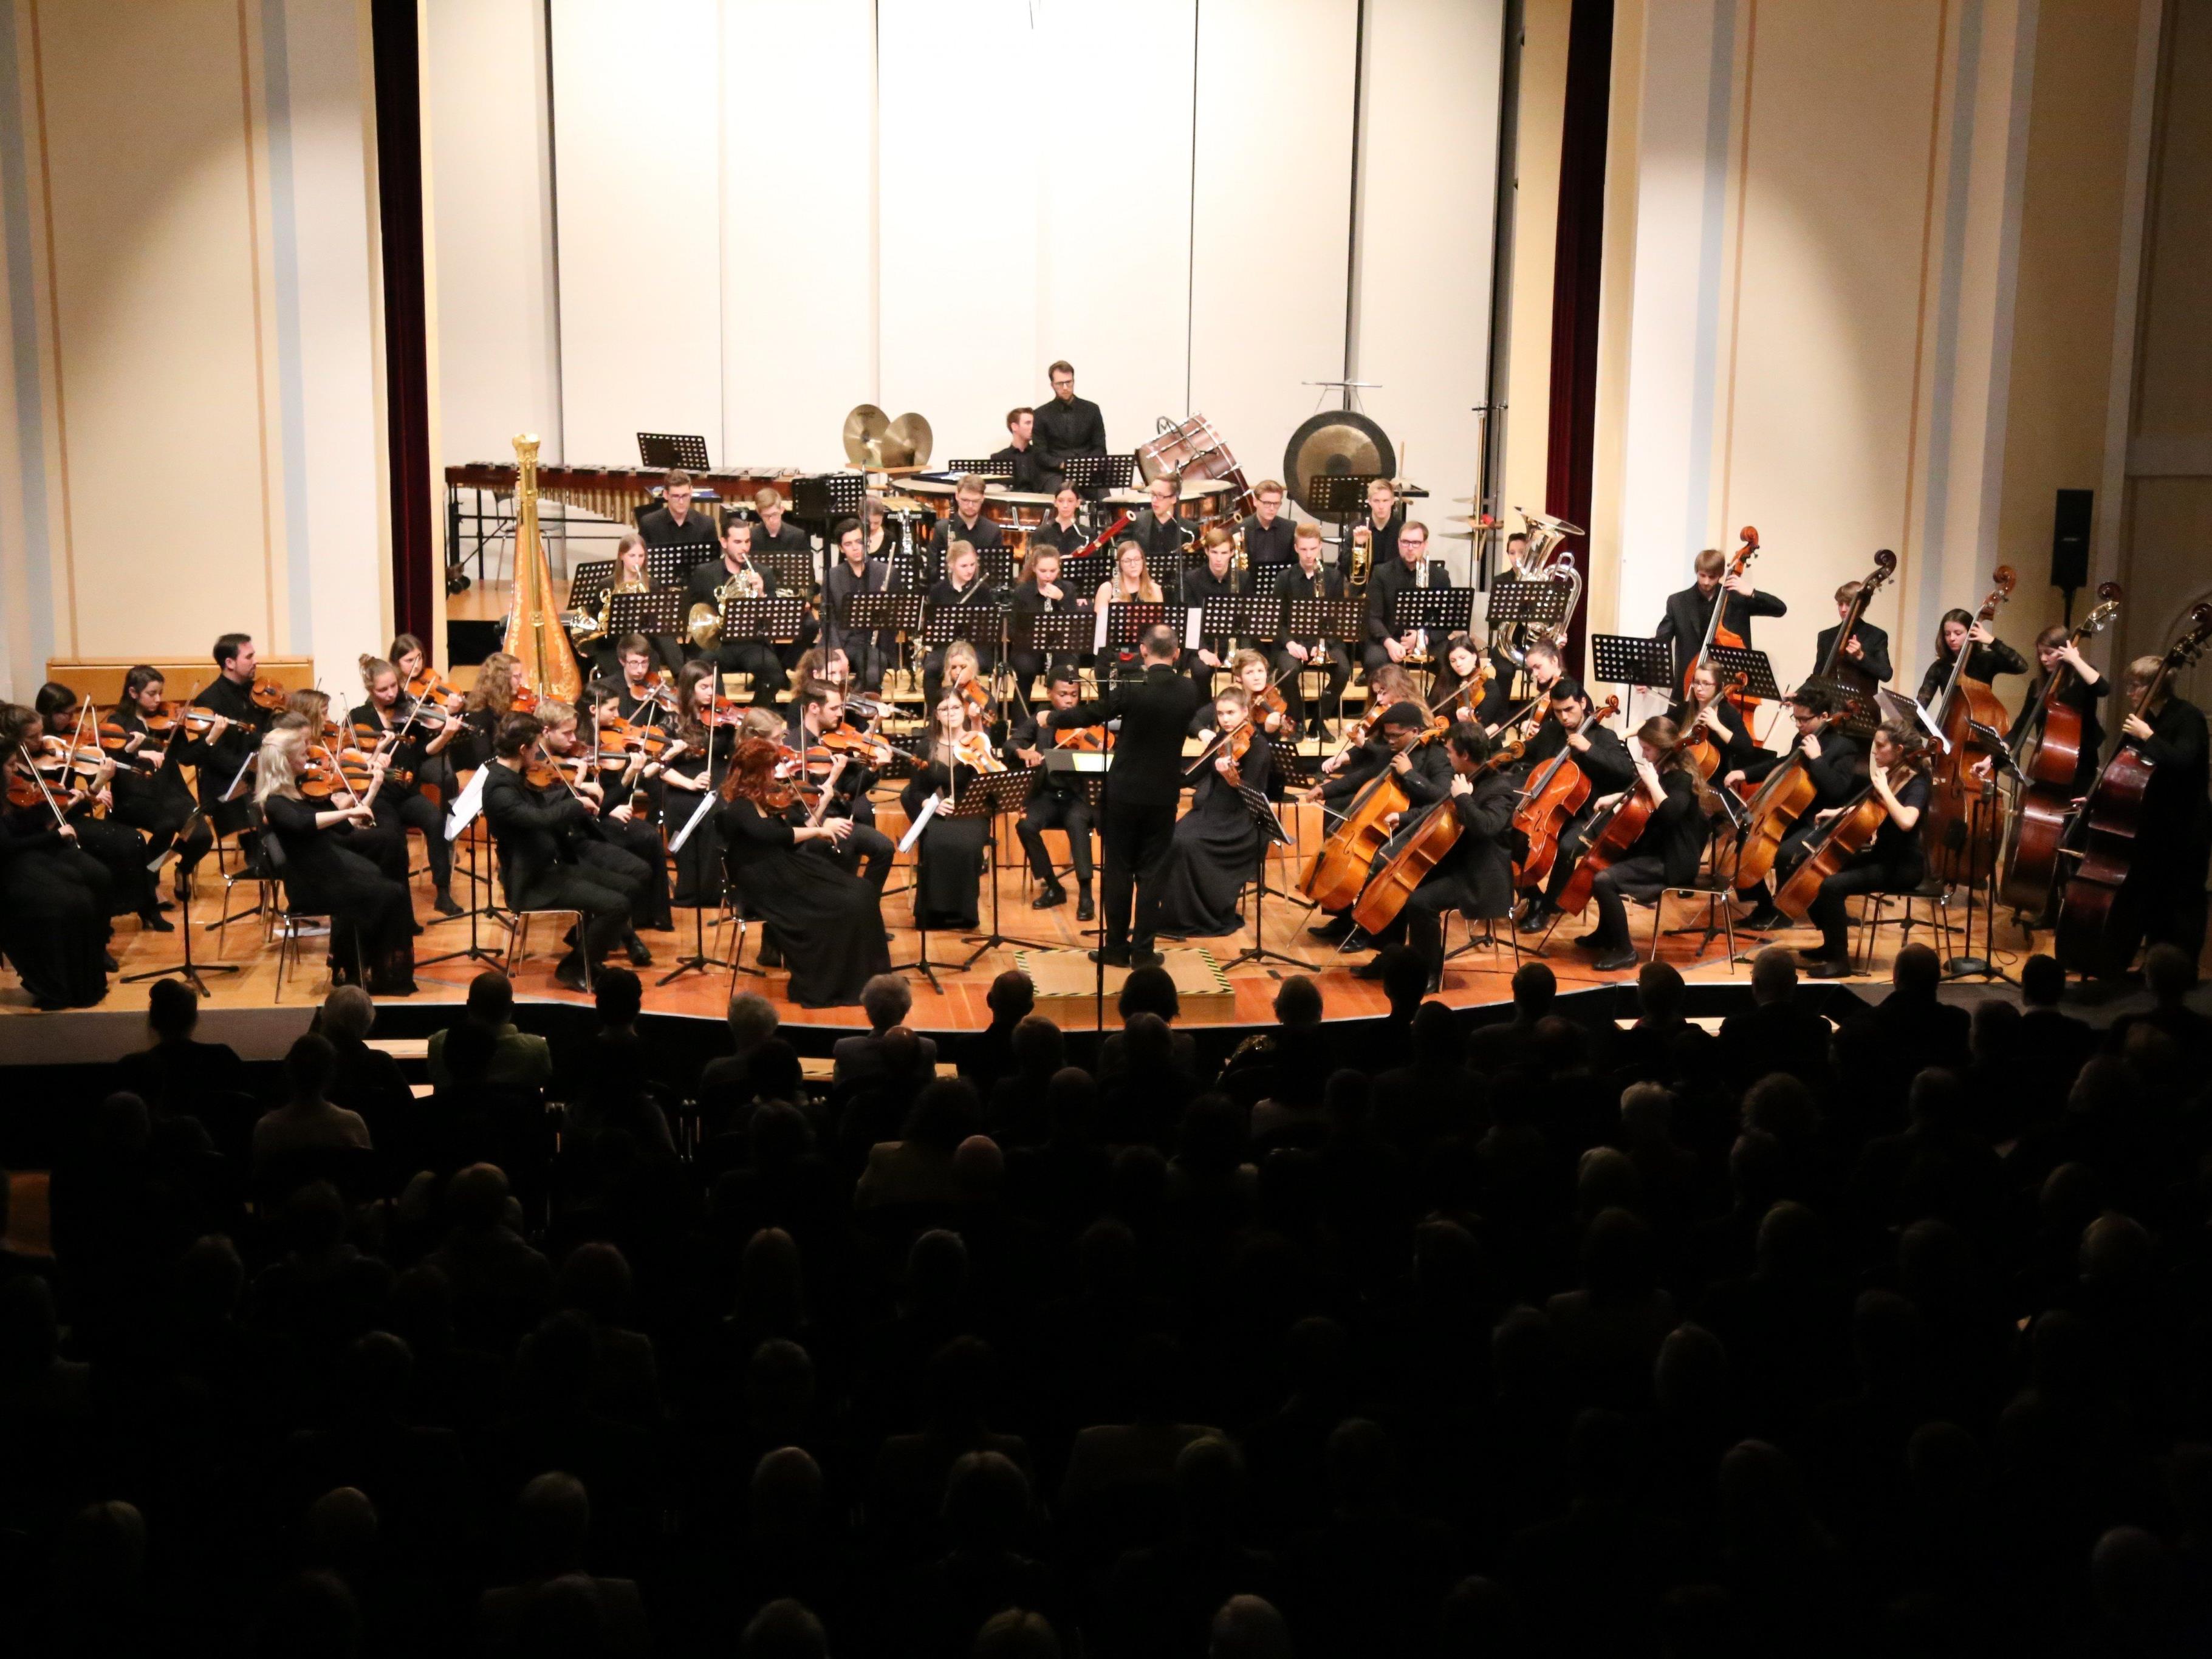 Weihnachtsmatinee mit dem Sinfonieorchester des Vorarlberger Landeskonservatoriums unter der Leitung von Benjamin Lack.